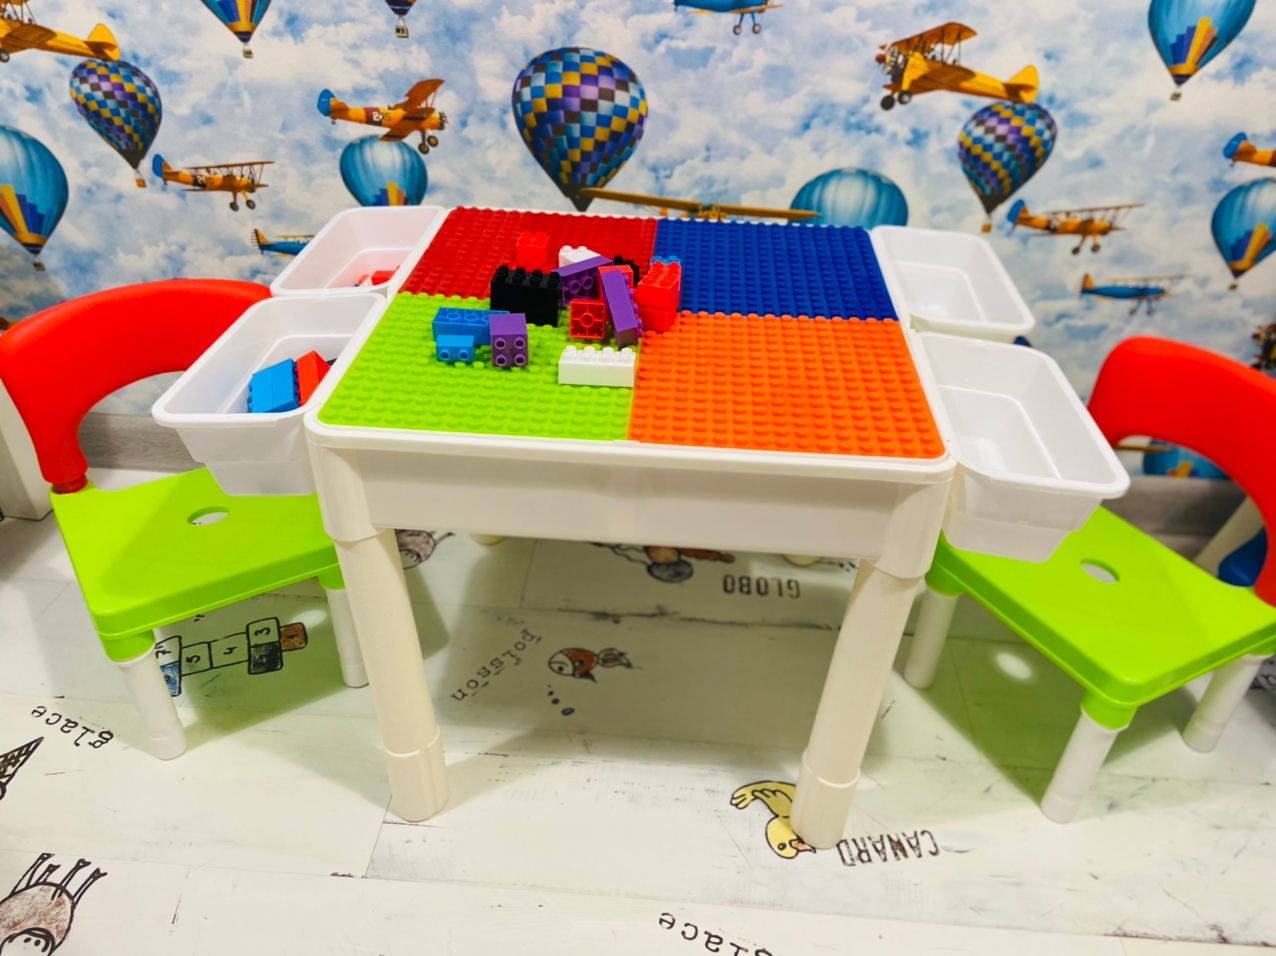 Столик 3 в 1 панель Lego+Песочница+Стол- НЕБОЛЬШОЙ БРАК, Лего в набор не входит